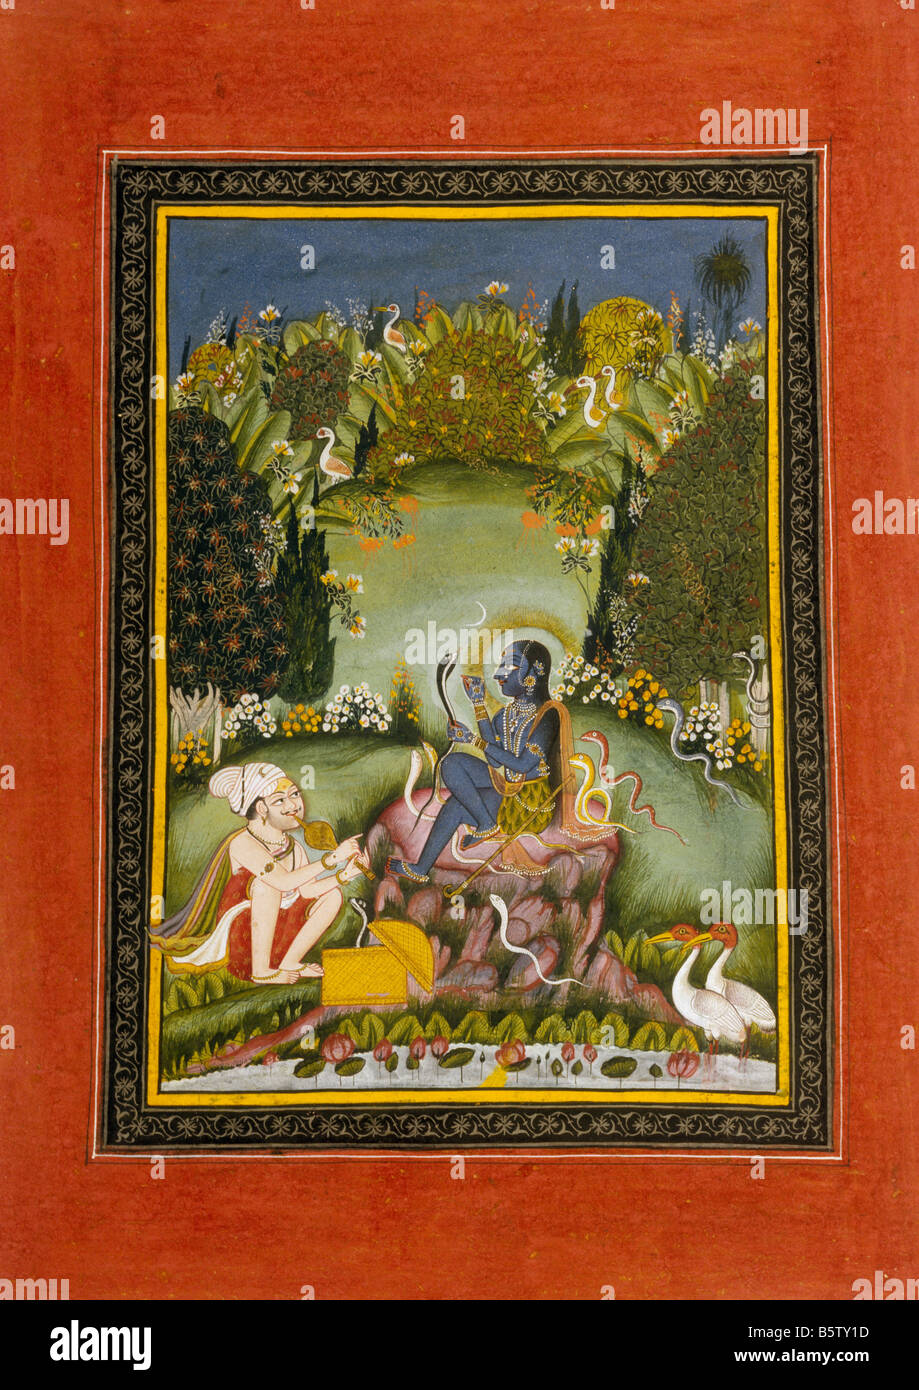 Ragini asavari ragamala. Bundi. C. 1775. Musée national de New Delhi Inde 51 67/25 Banque D'Images